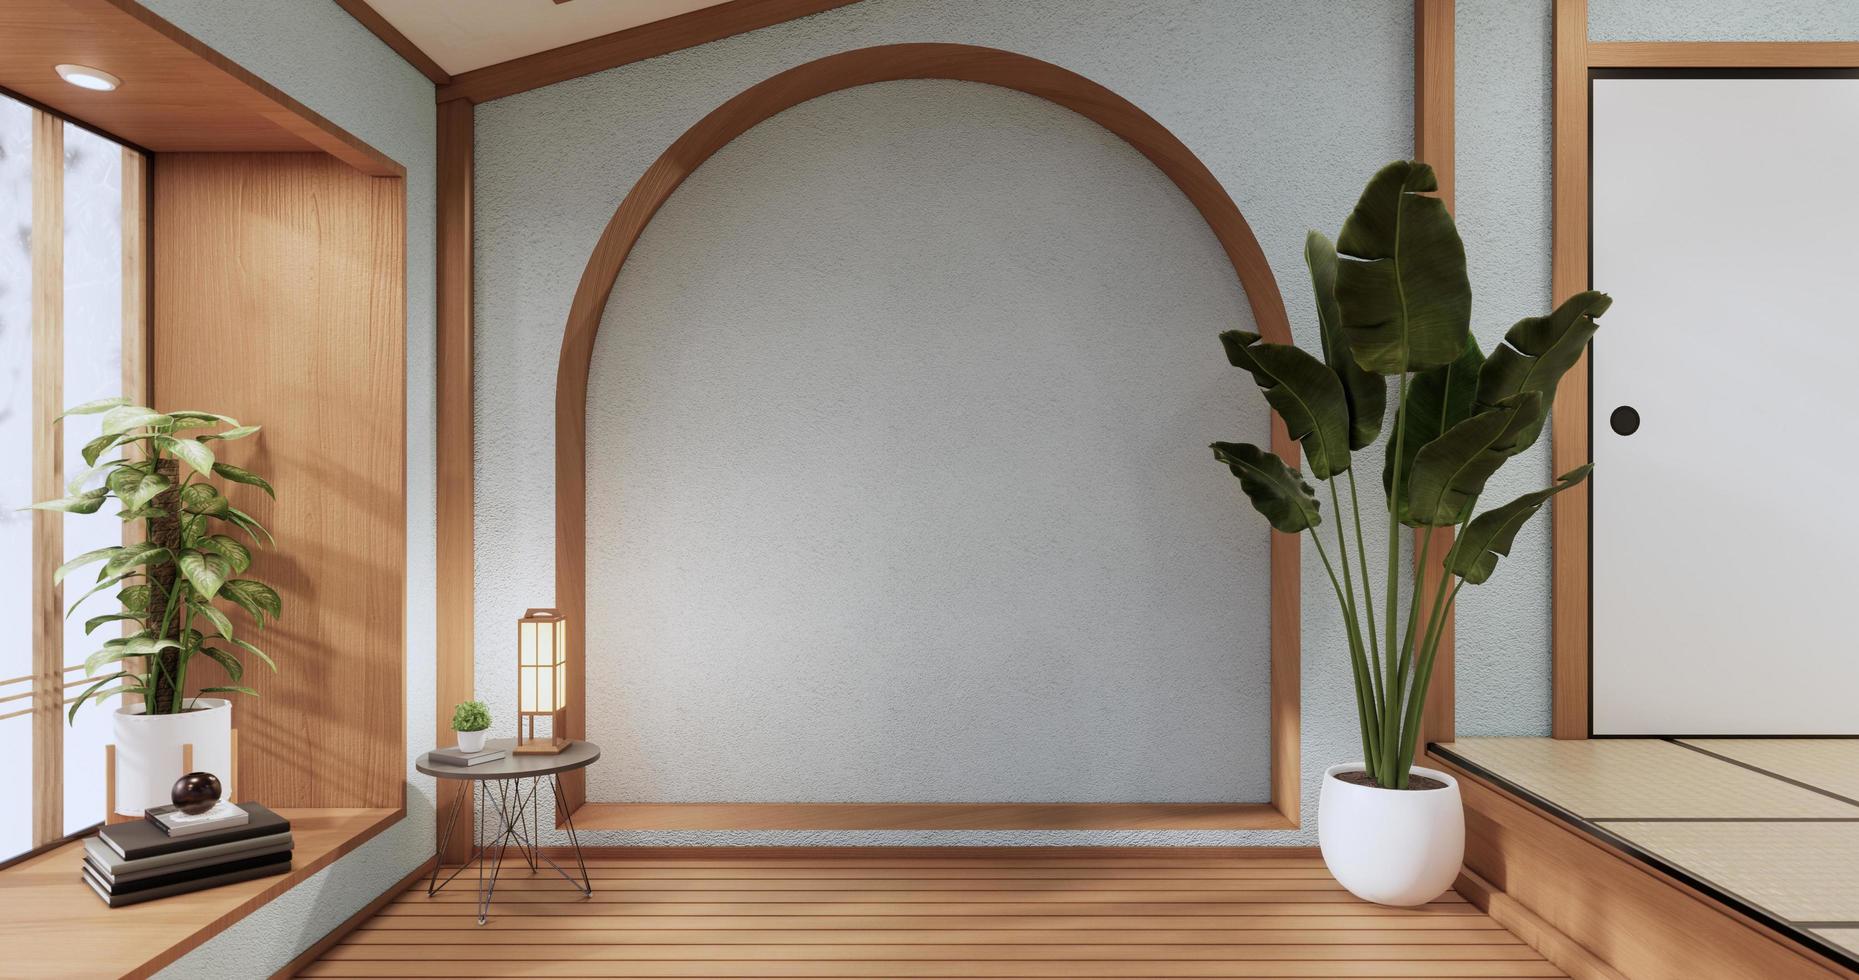 o design de madeira do gabinete no interior da sala de hortelã estilo moderno. foto